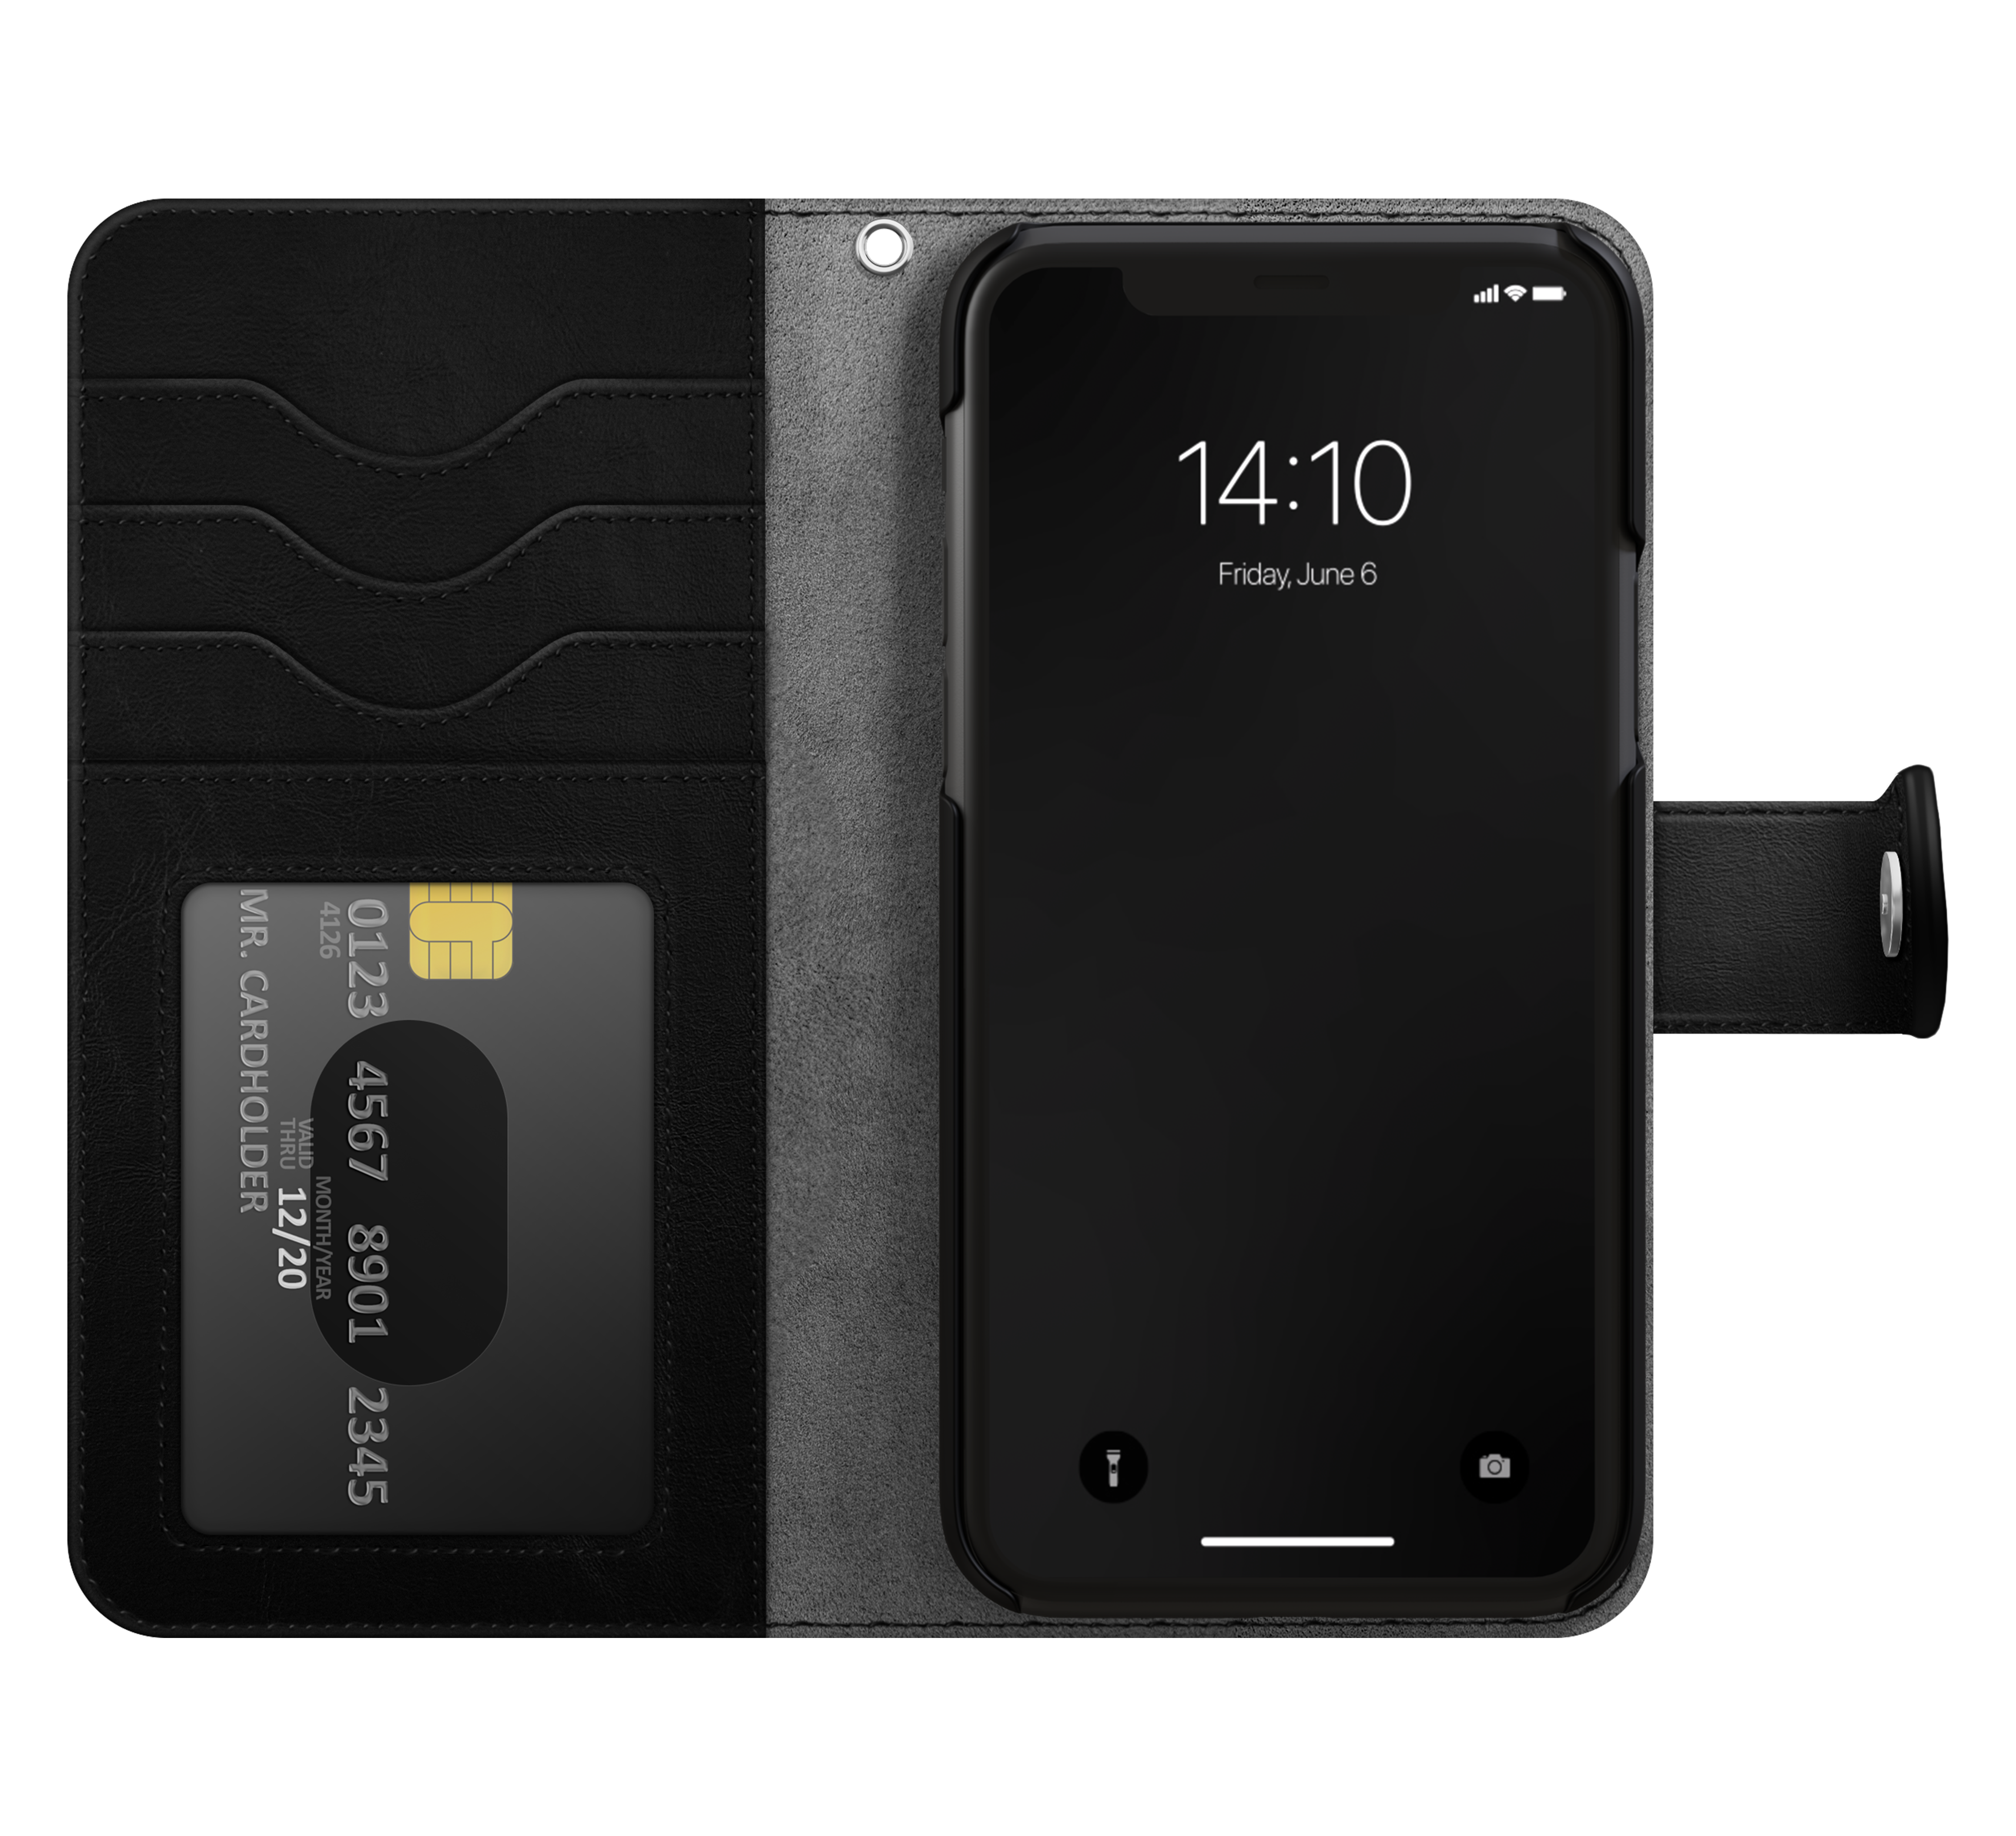 Magnet Wallet+ iPhone 15 Pro Max Zwart